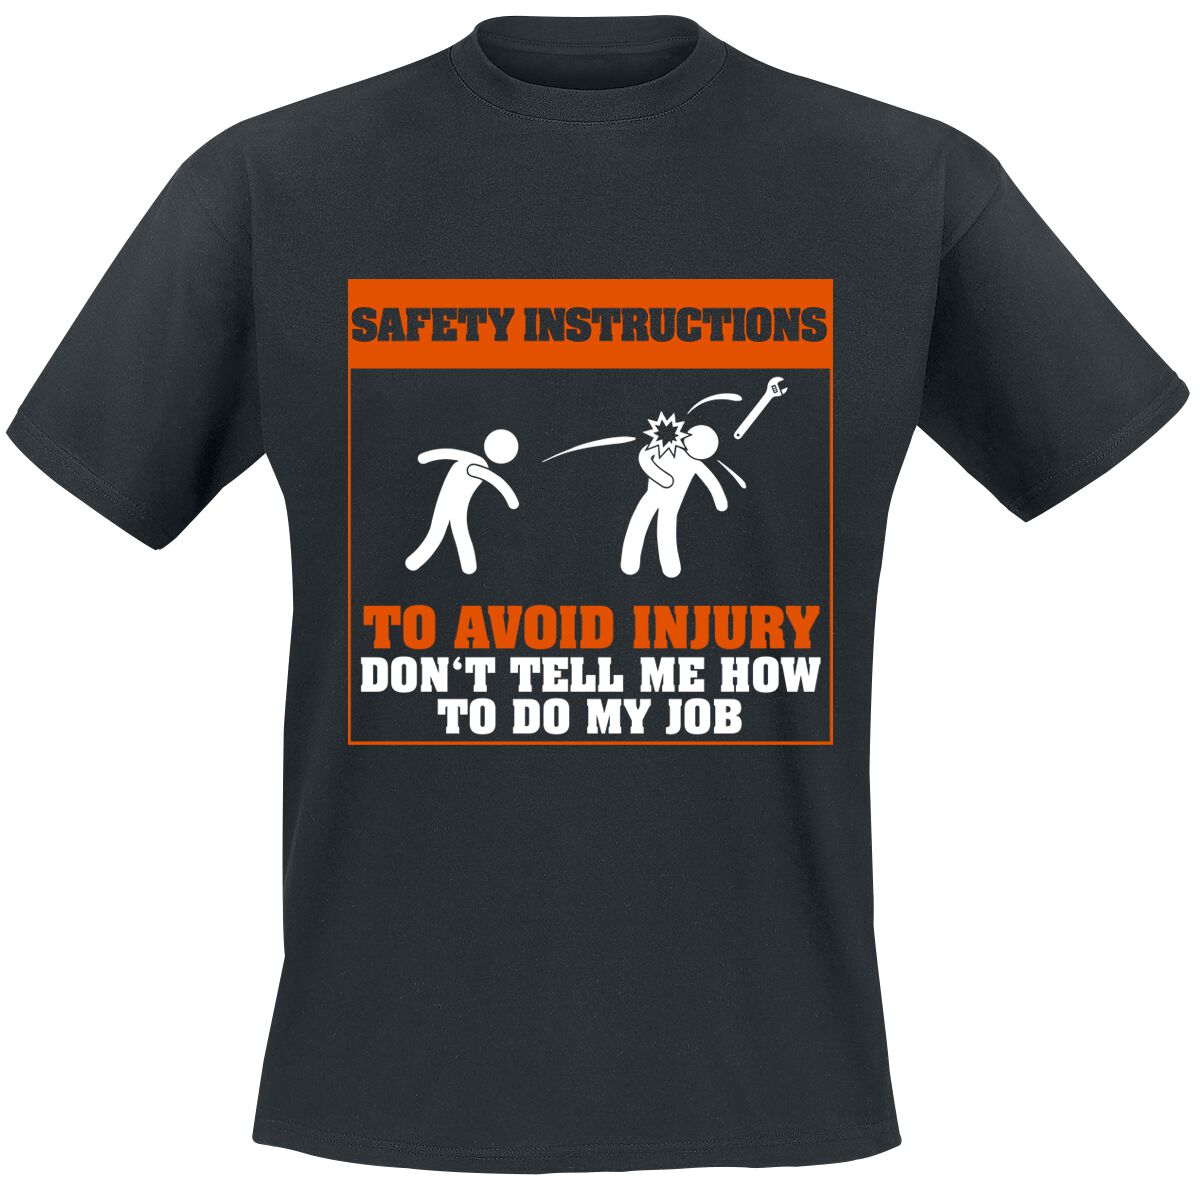 Beruf & Karriere T-Shirt - Safety Instructions - S bis 5XL - für Männer - Größe 5XL - schwarz